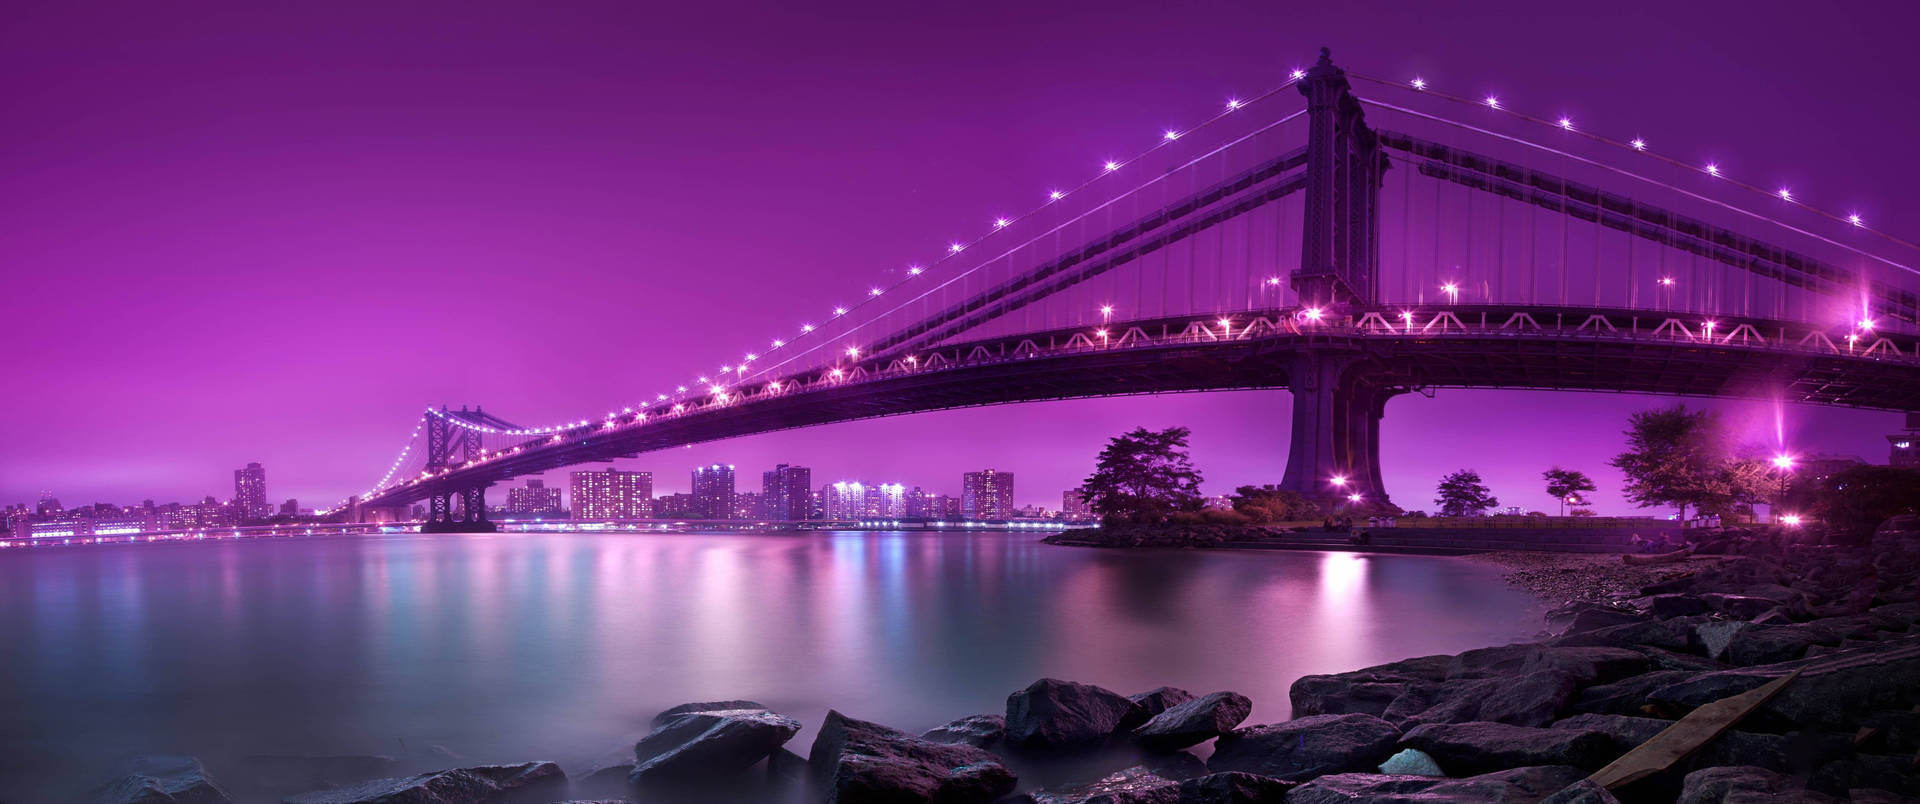 Ultra Wide 4k Purple Bridge Wallpaper